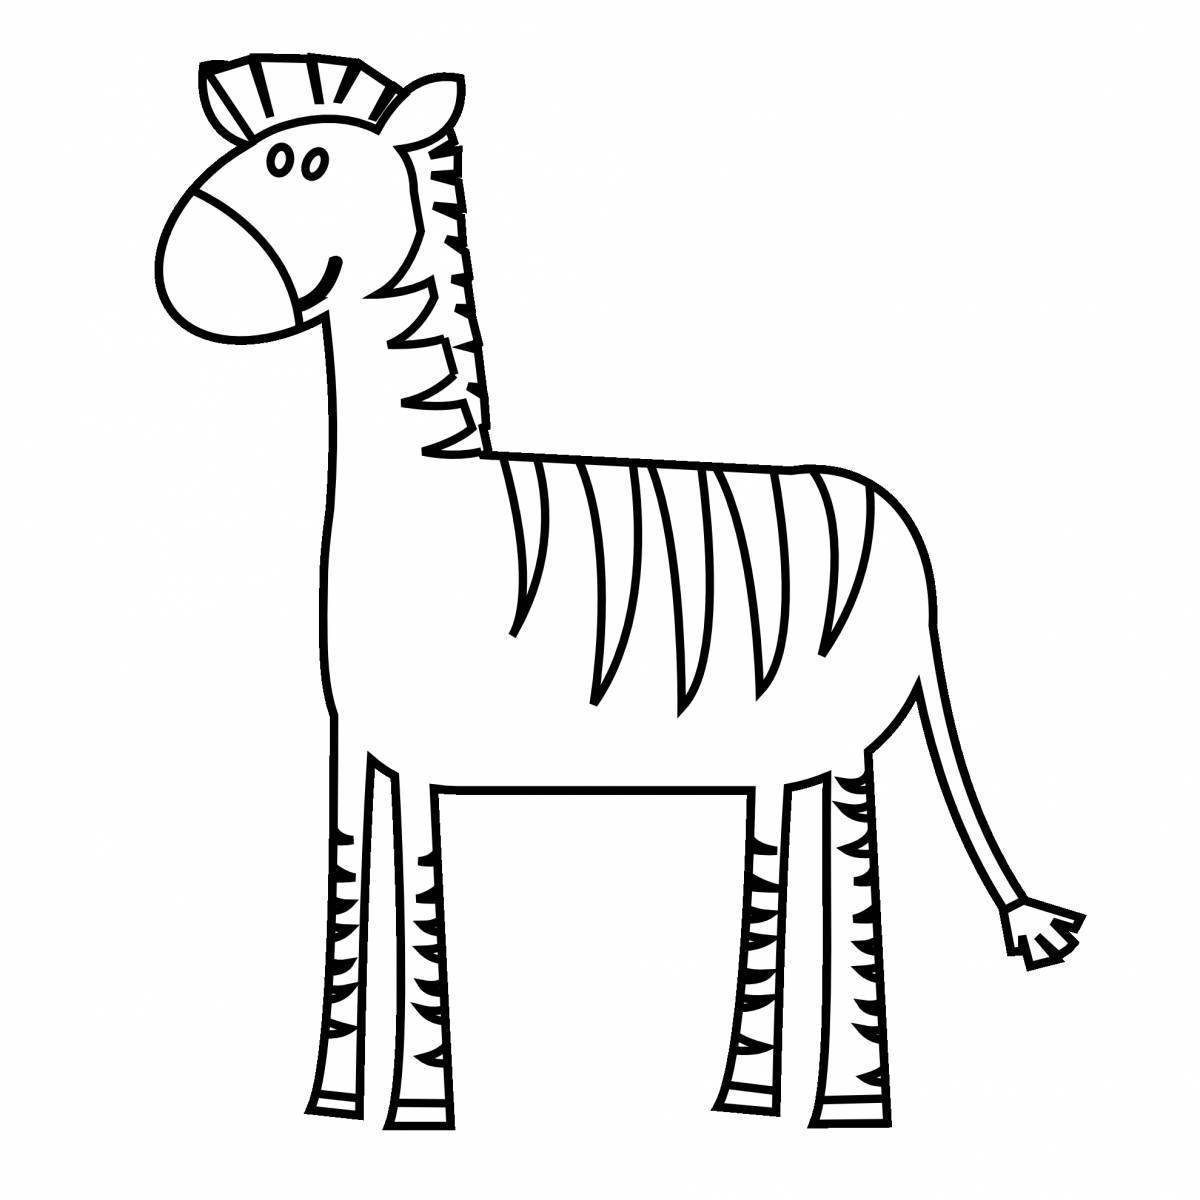 Majestic zebra without stripes